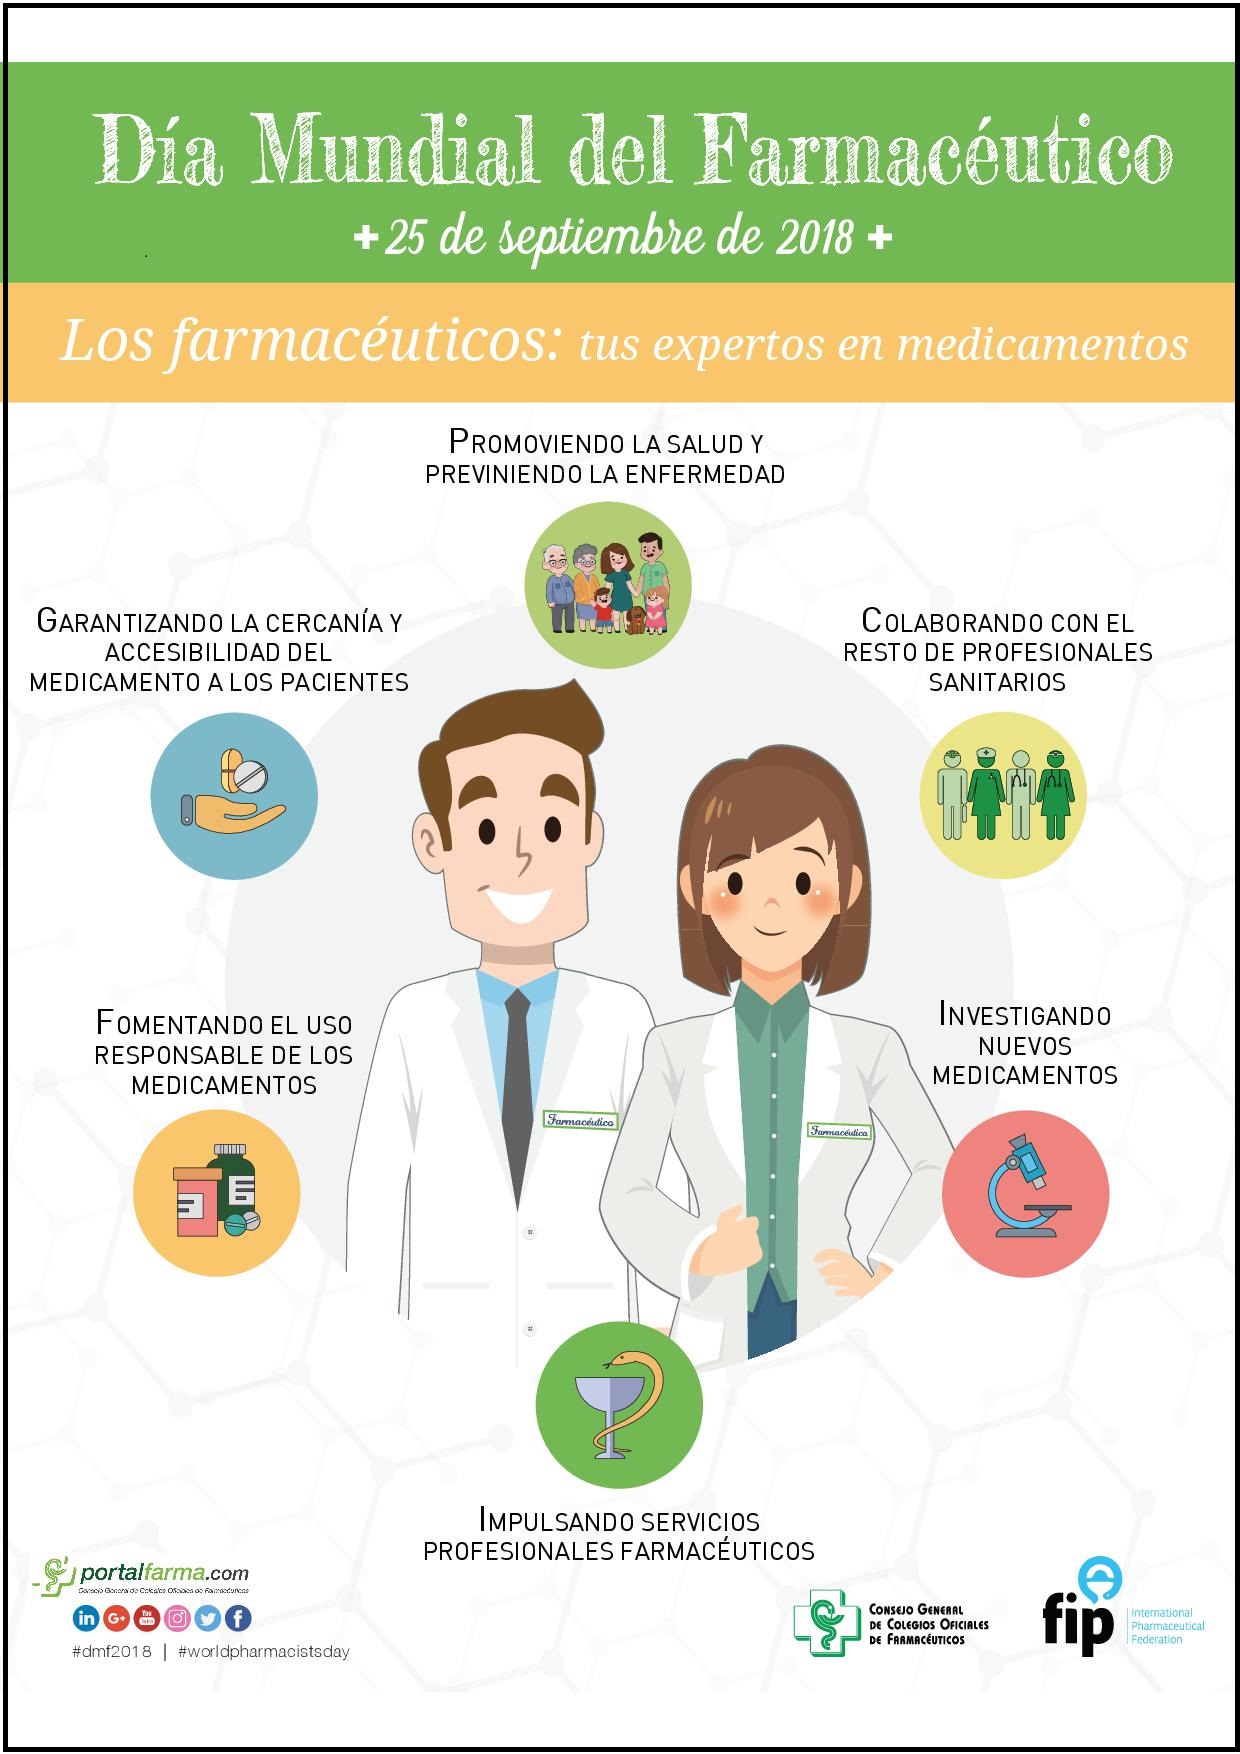 Día Mundial del Farmacéutico 2018 - Colegio de Farmacéuticos de Pontevedra